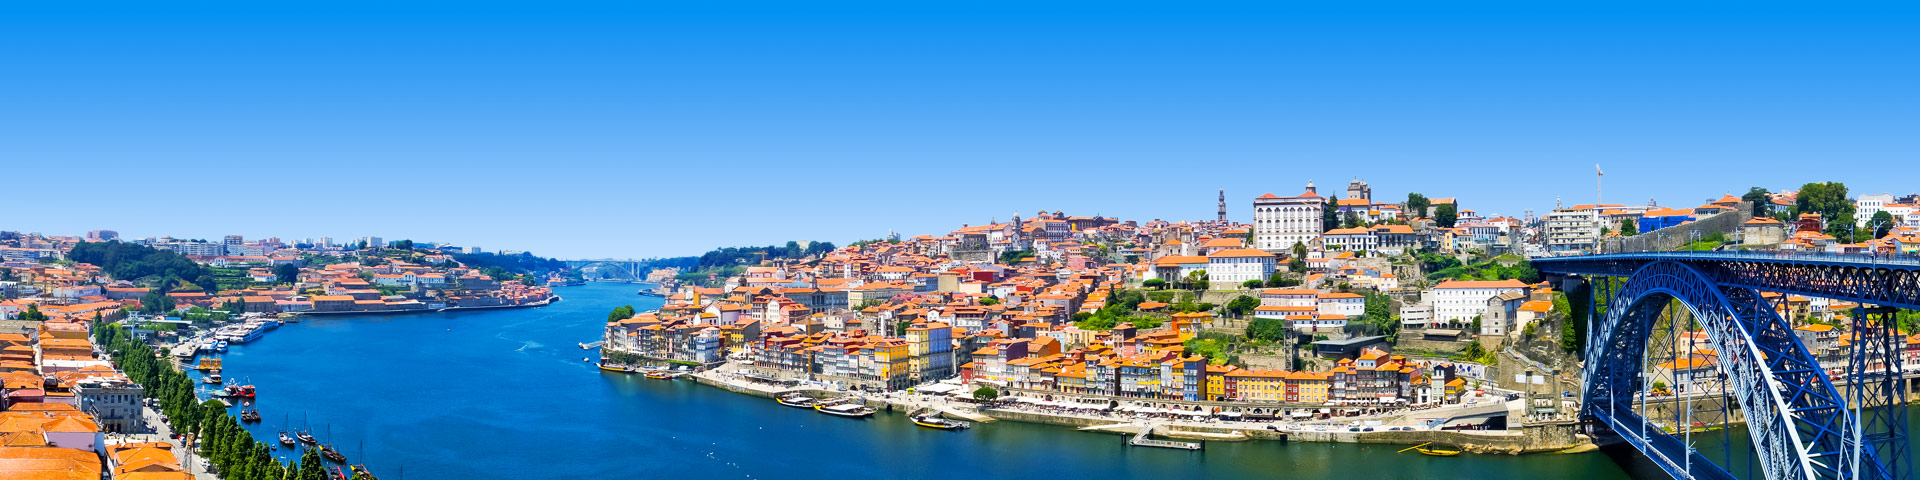 Uitzicht op de havenstad Porto